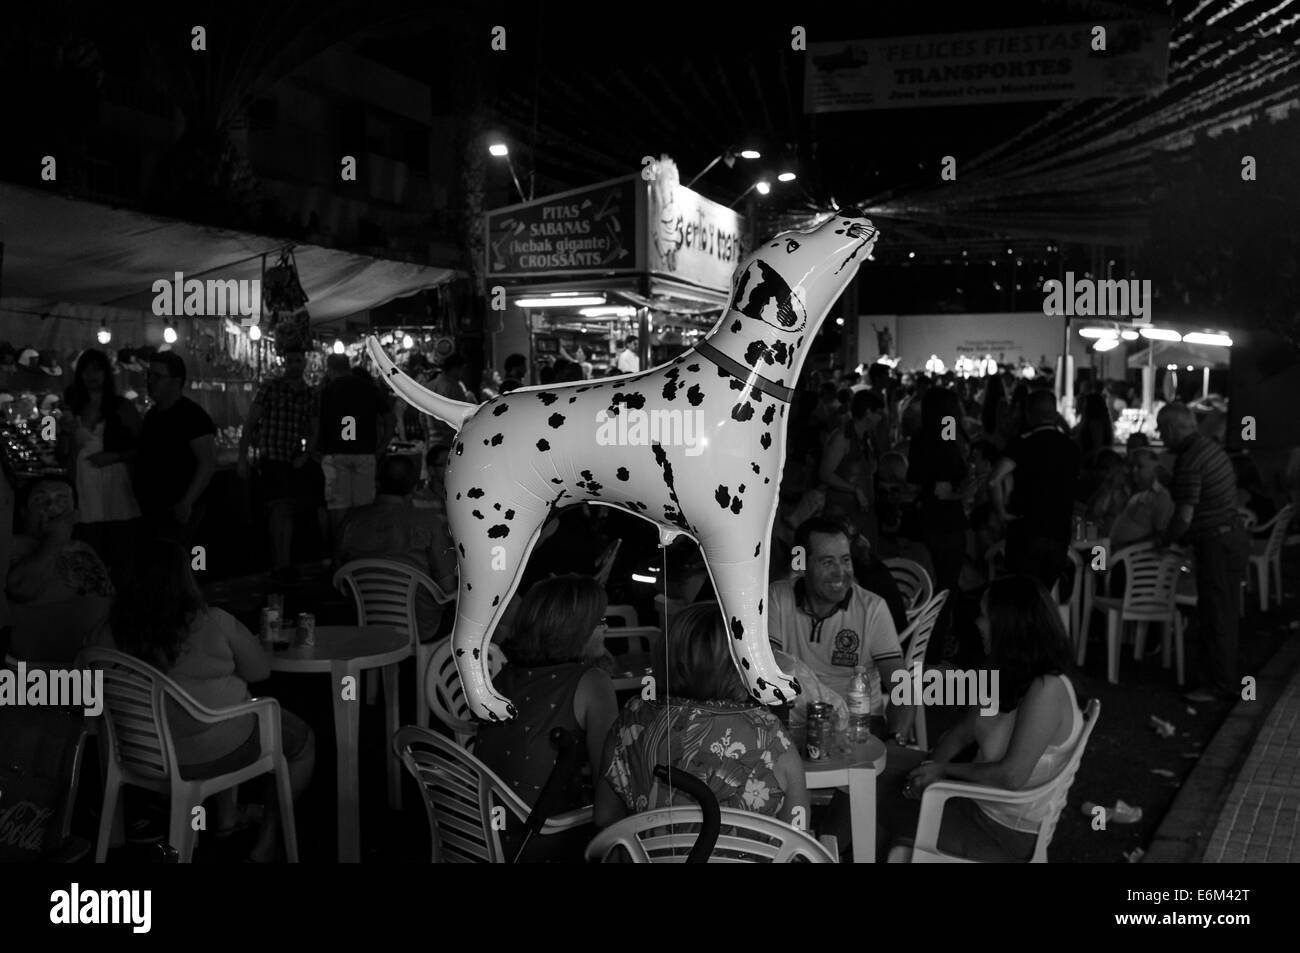 Hélium Ballon en forme de chien dalmatien flotte au-dessus des carnavaliers à la Fiesta de San Juan annuel, Tenerife, Canaries, Espagne. Banque D'Images